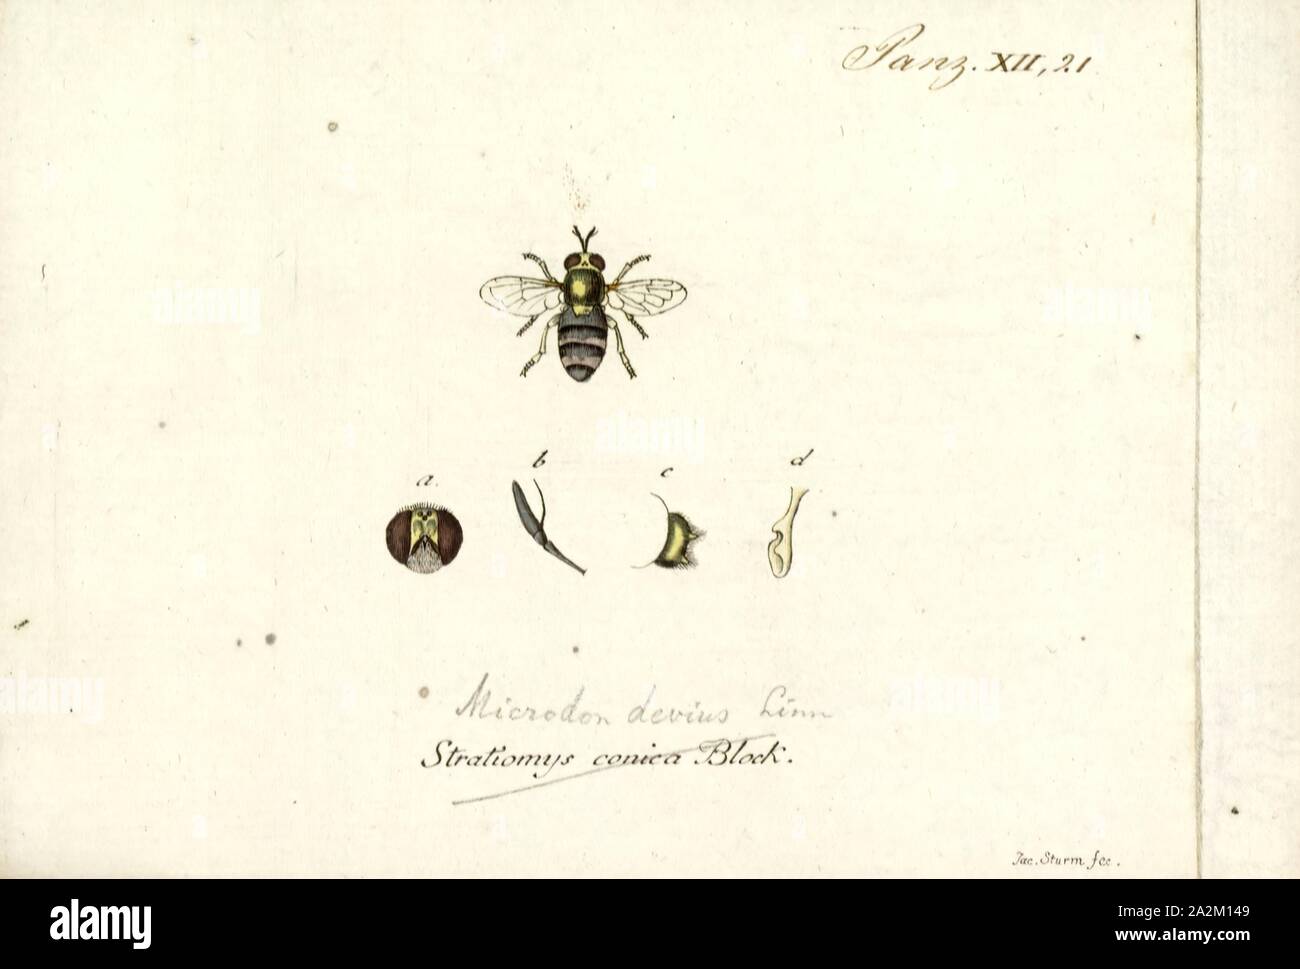 Aphritis, imprimer, les mouches en vol stationnaire (famille des Syrphidae) du genre Microdon est inhabituelle chez les Diptères. Comme les autres membres de la sous-famille, ils sont myrmecophiles, ce qui signifie qu'ils vivent dans les nids de fourmis Banque D'Images